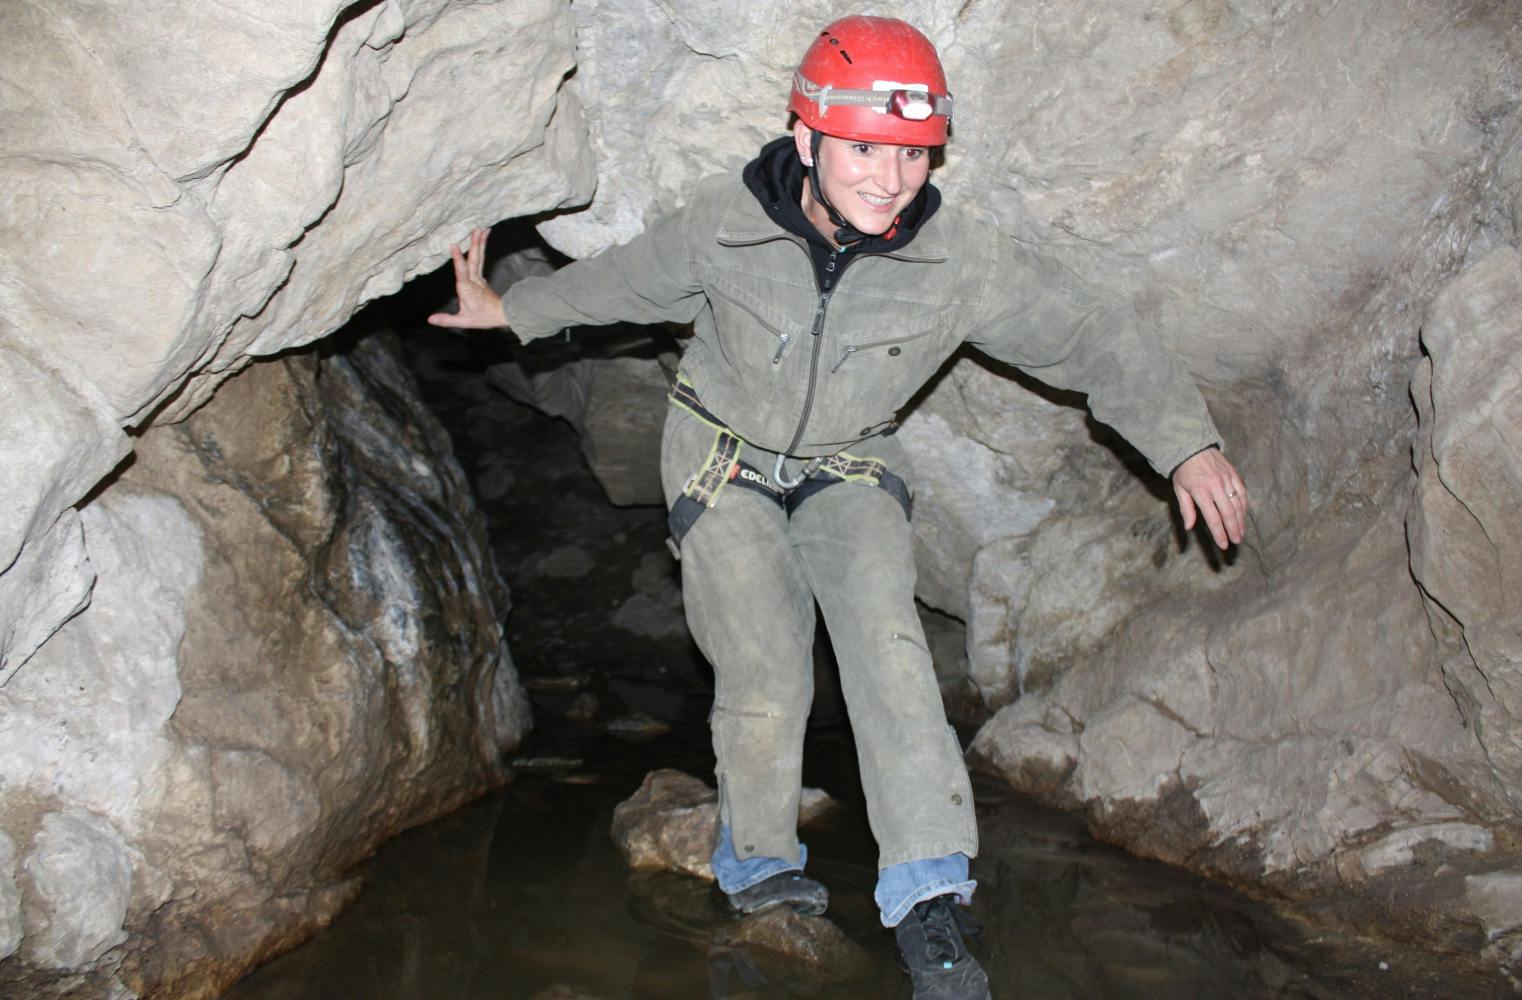 Höhlen-Abenteuer | 4 Stunden geführte Höhlenexkursion